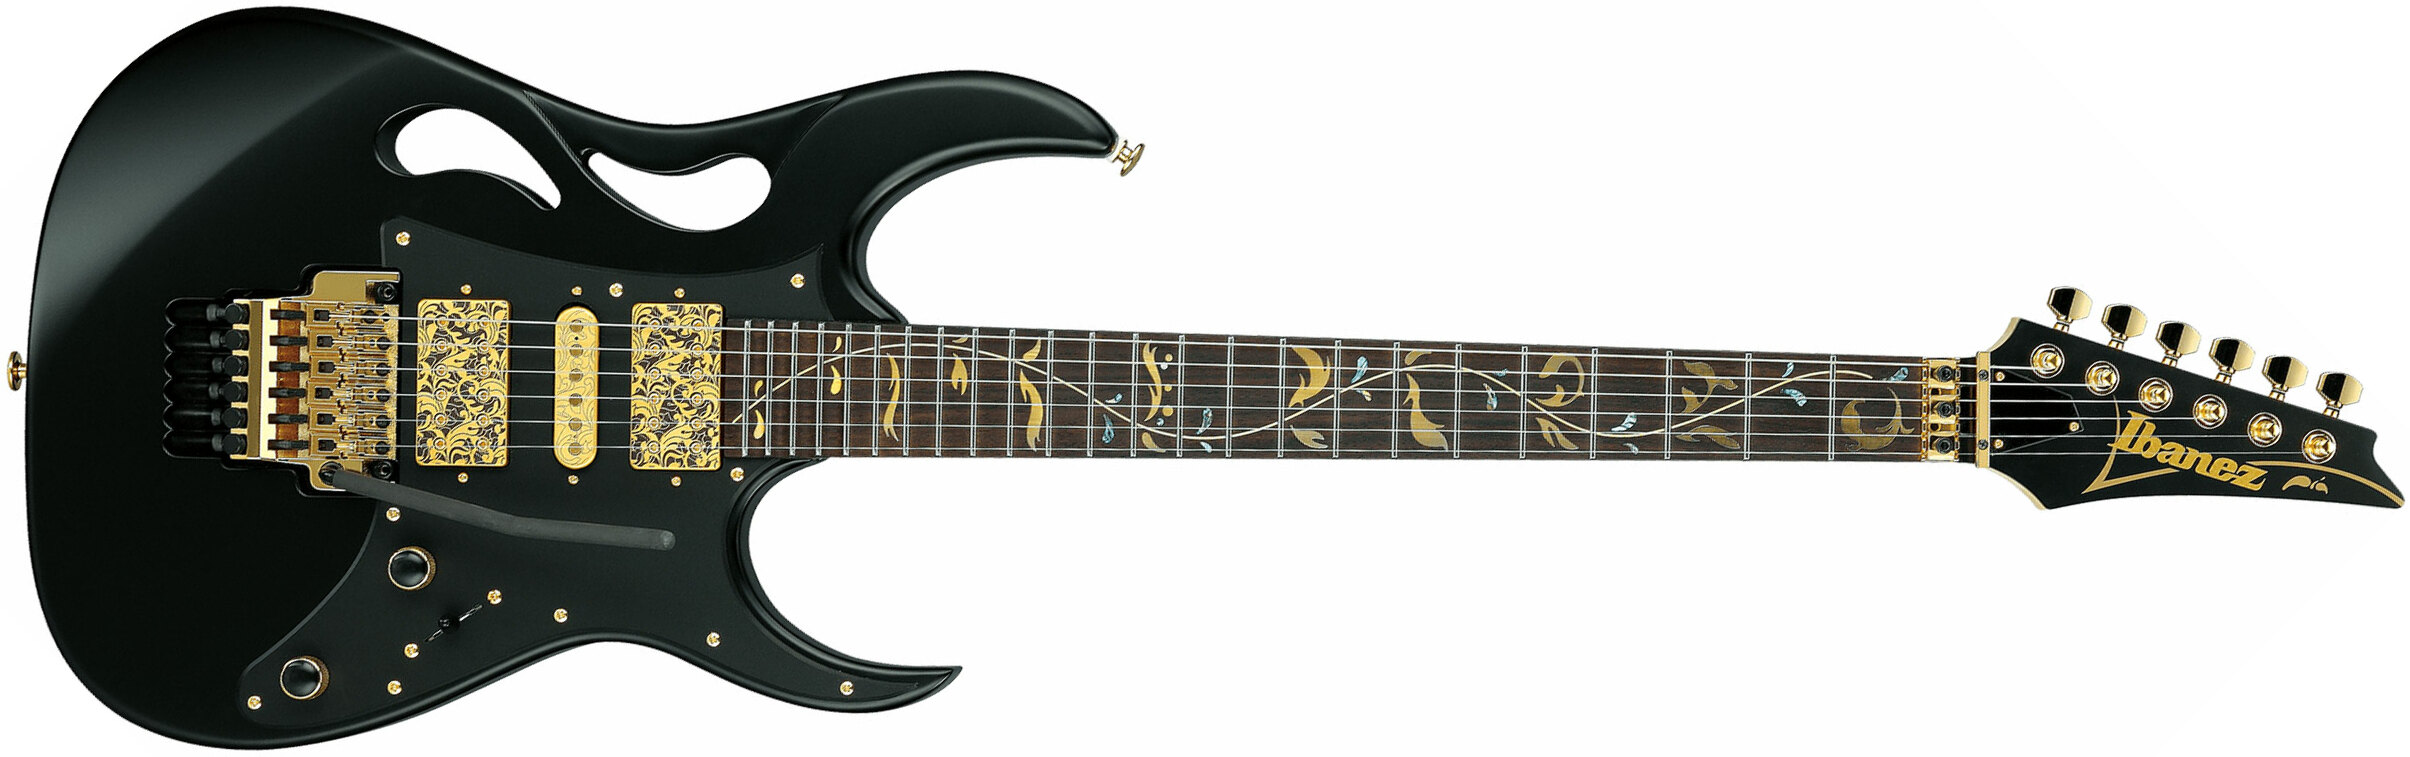 Ibanez Steve Vai Pia3761 Xb Signature Jap 2h Dimarzio Fr Rw - Onyx Black - Elektrische gitaar in Str-vorm - Main picture